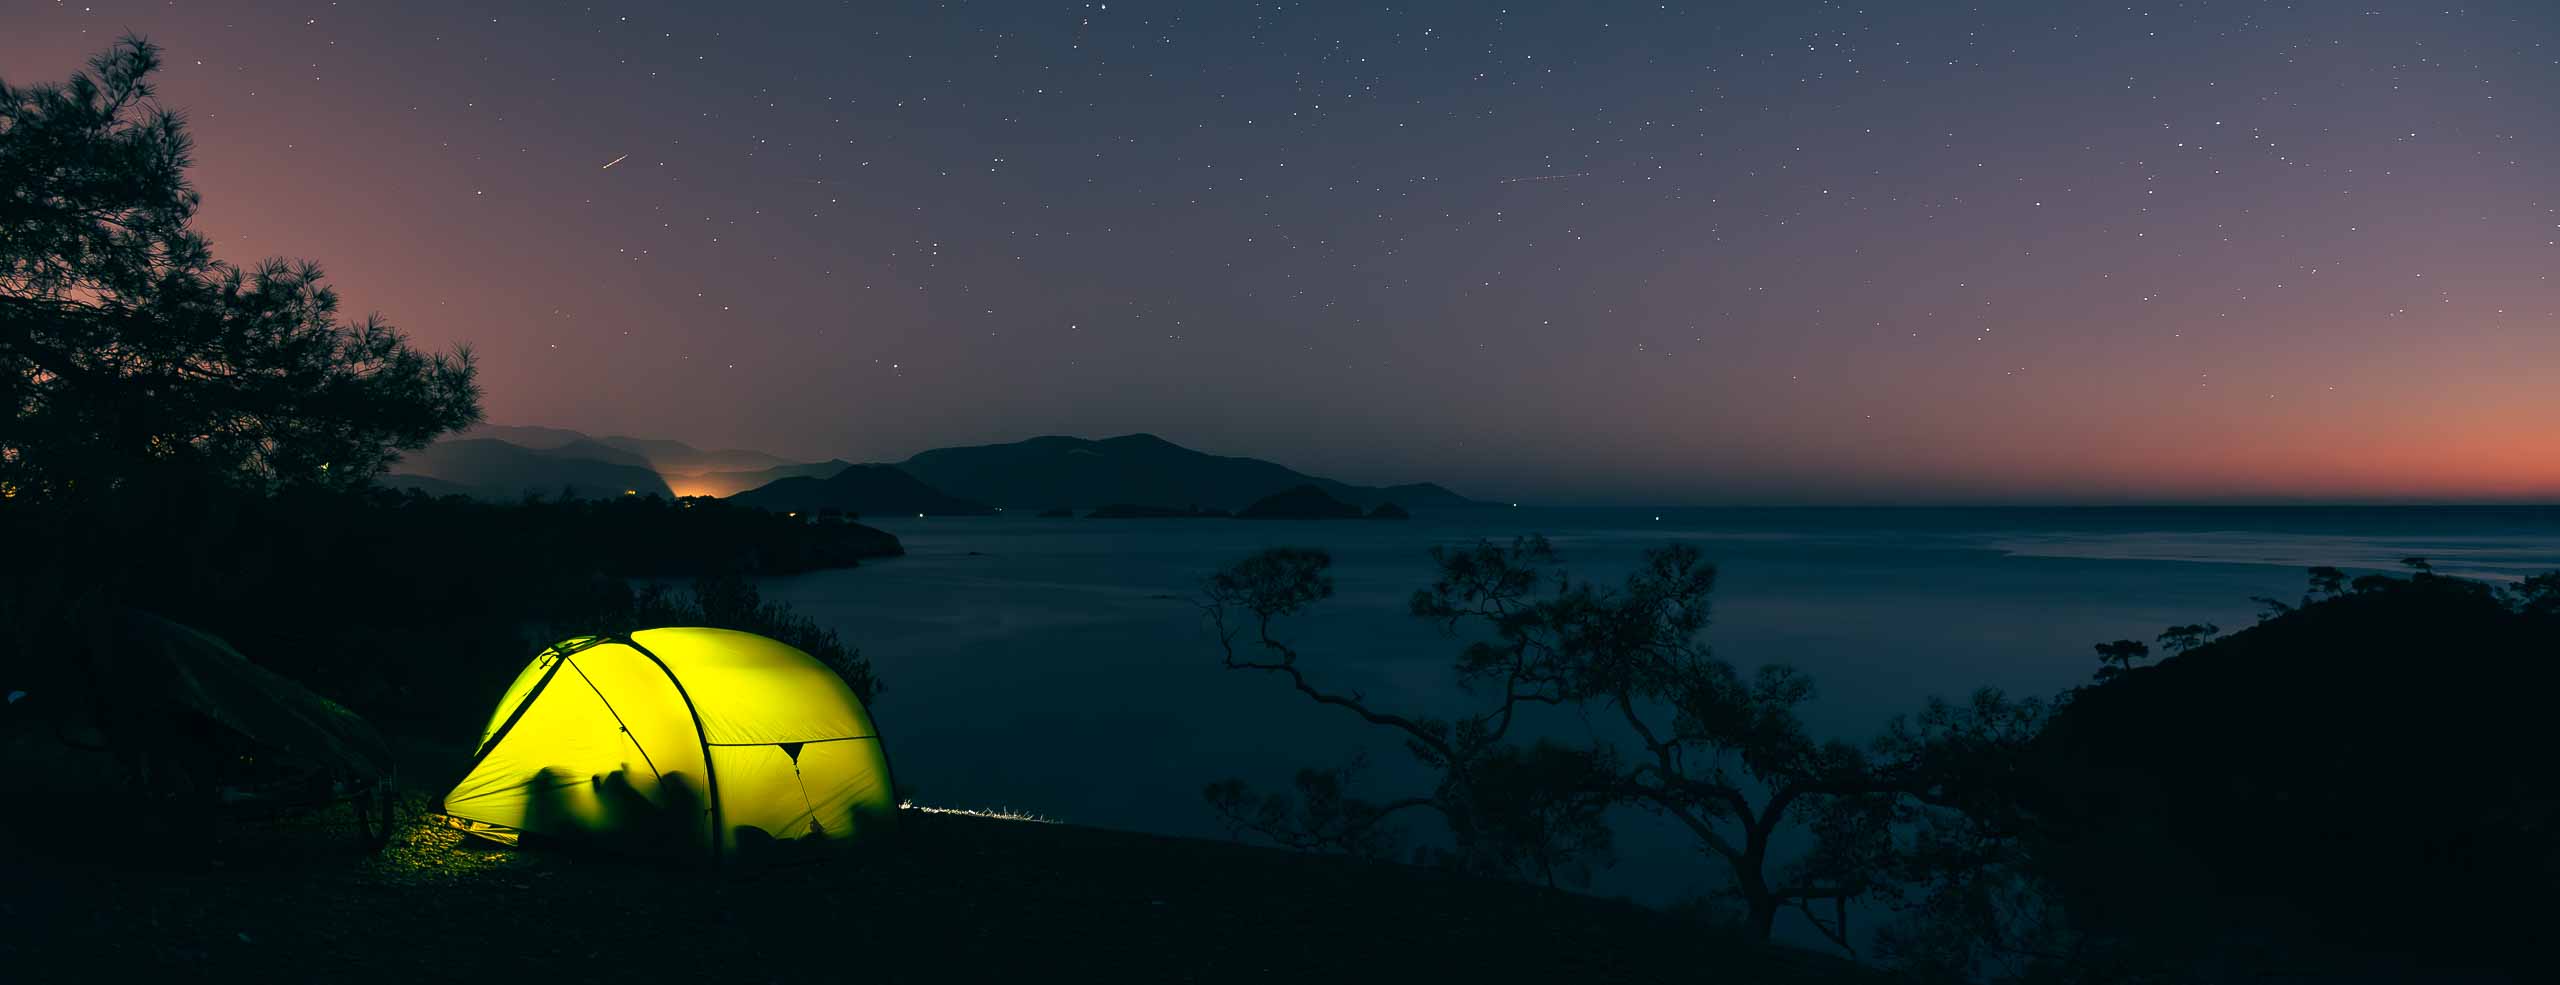 Tente Exped Venus II illuminée de nuit sur une falaise surplombant la mer Égée, bivouac sous un ciel constellé d'étoiles près de Fethiye, Turquie